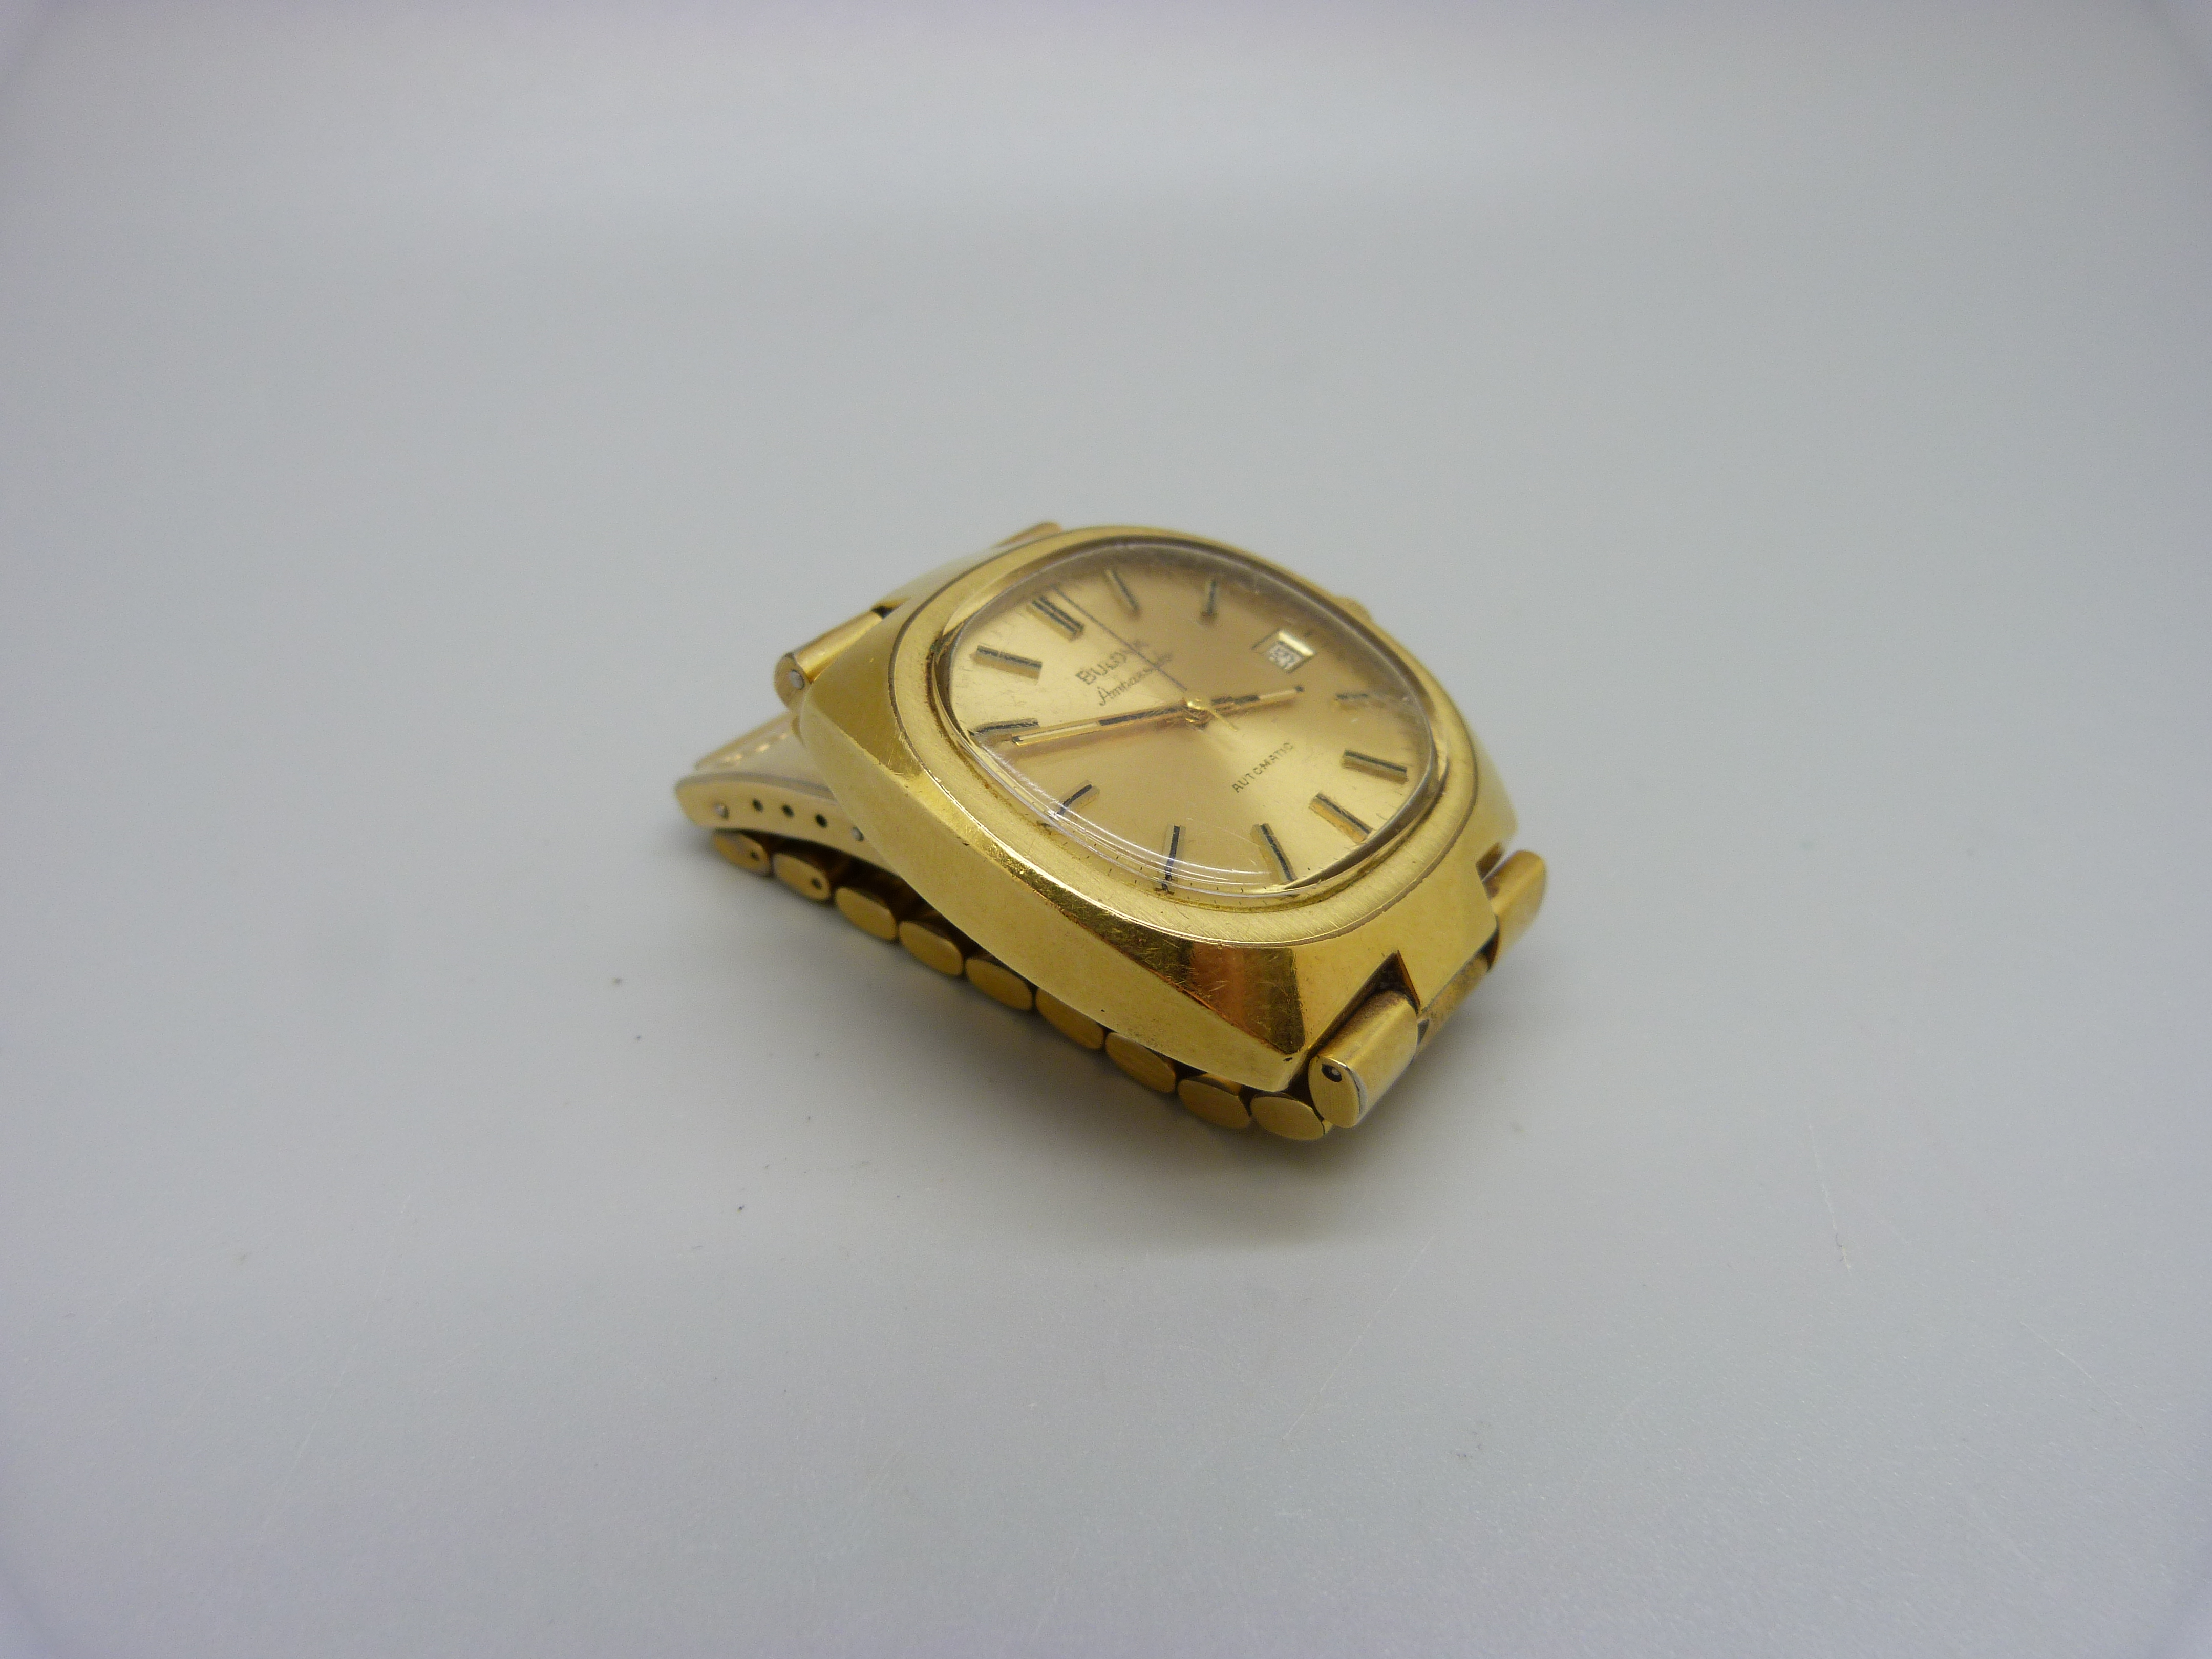 A Bulova Ambassador automatic wristwatch - Image 3 of 7